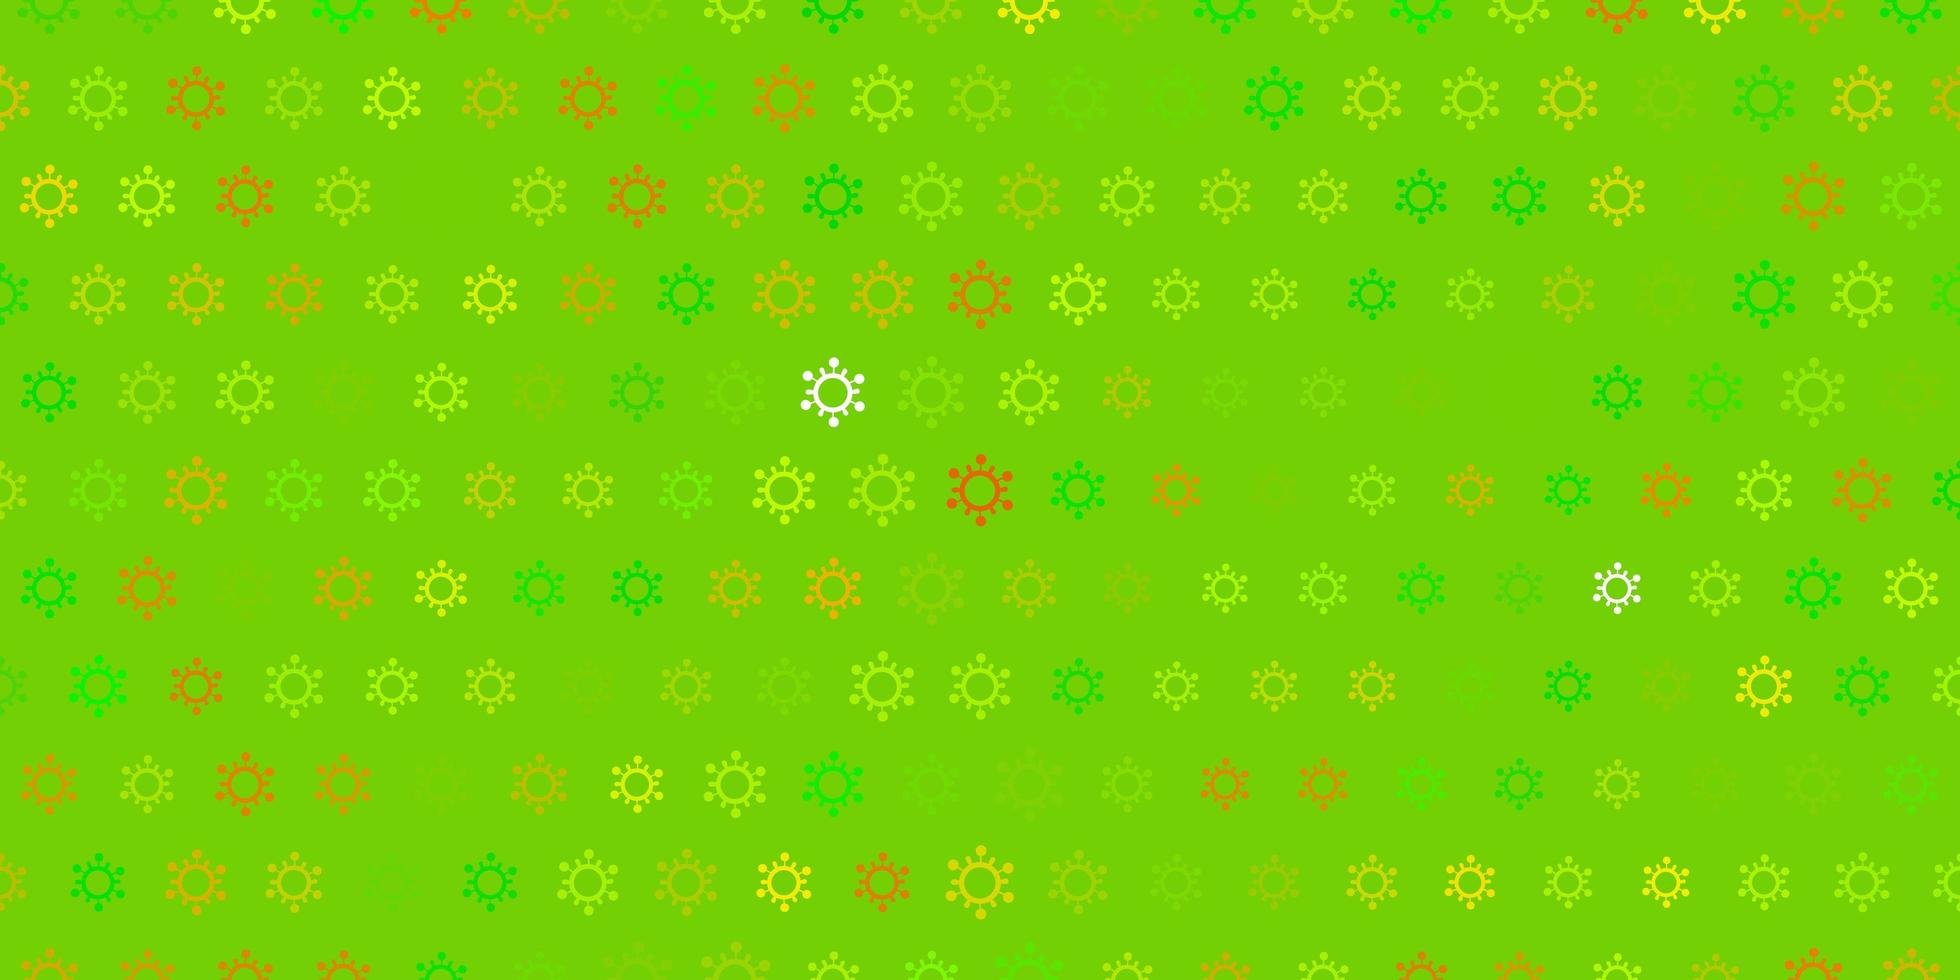 mörkgrön gul vektorbakgrund med covid19-symboler vektor